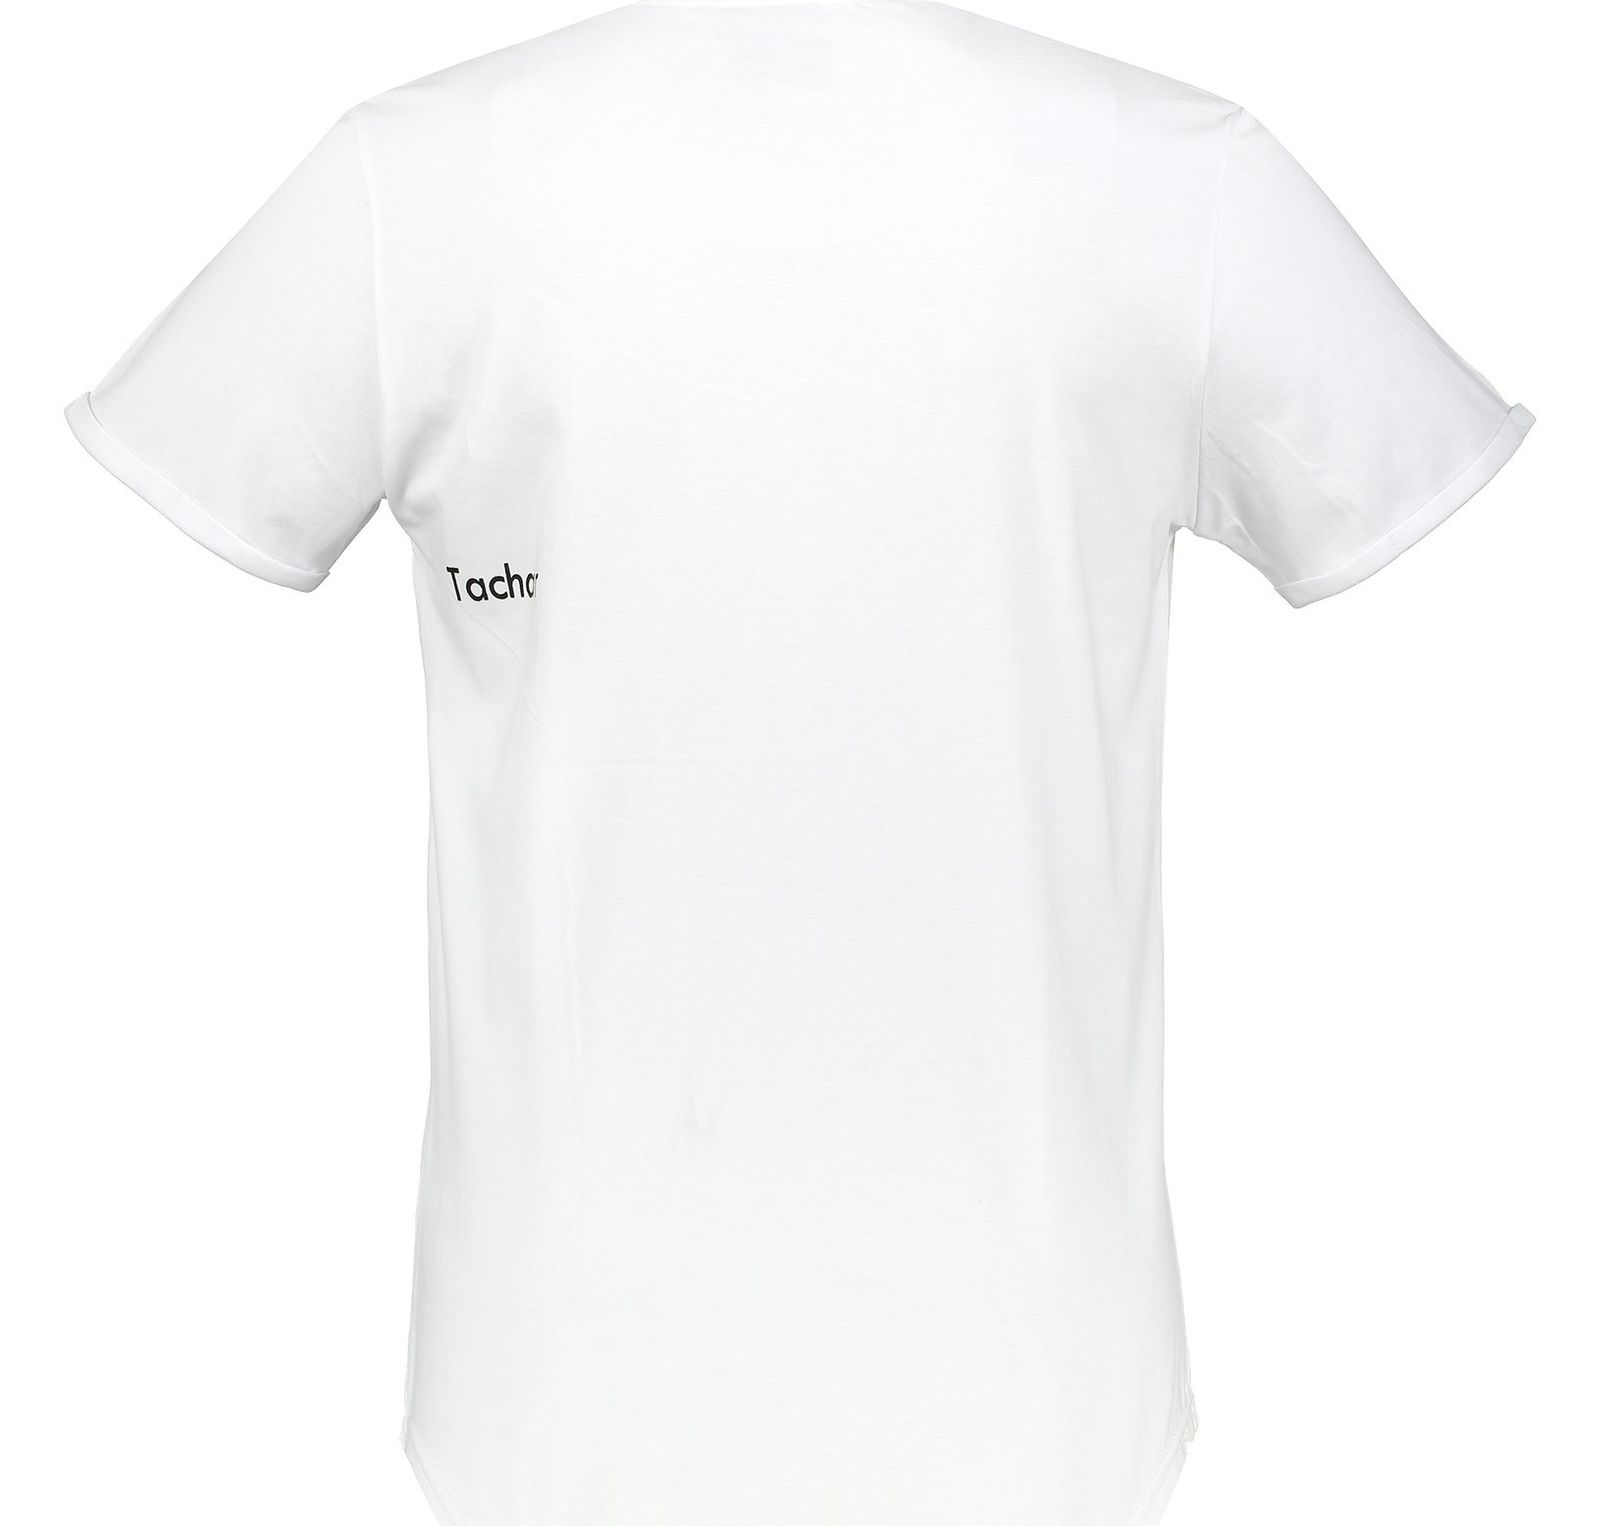 تی شرت نخی یقه گرد مردانه - تچر - سفيد - 3